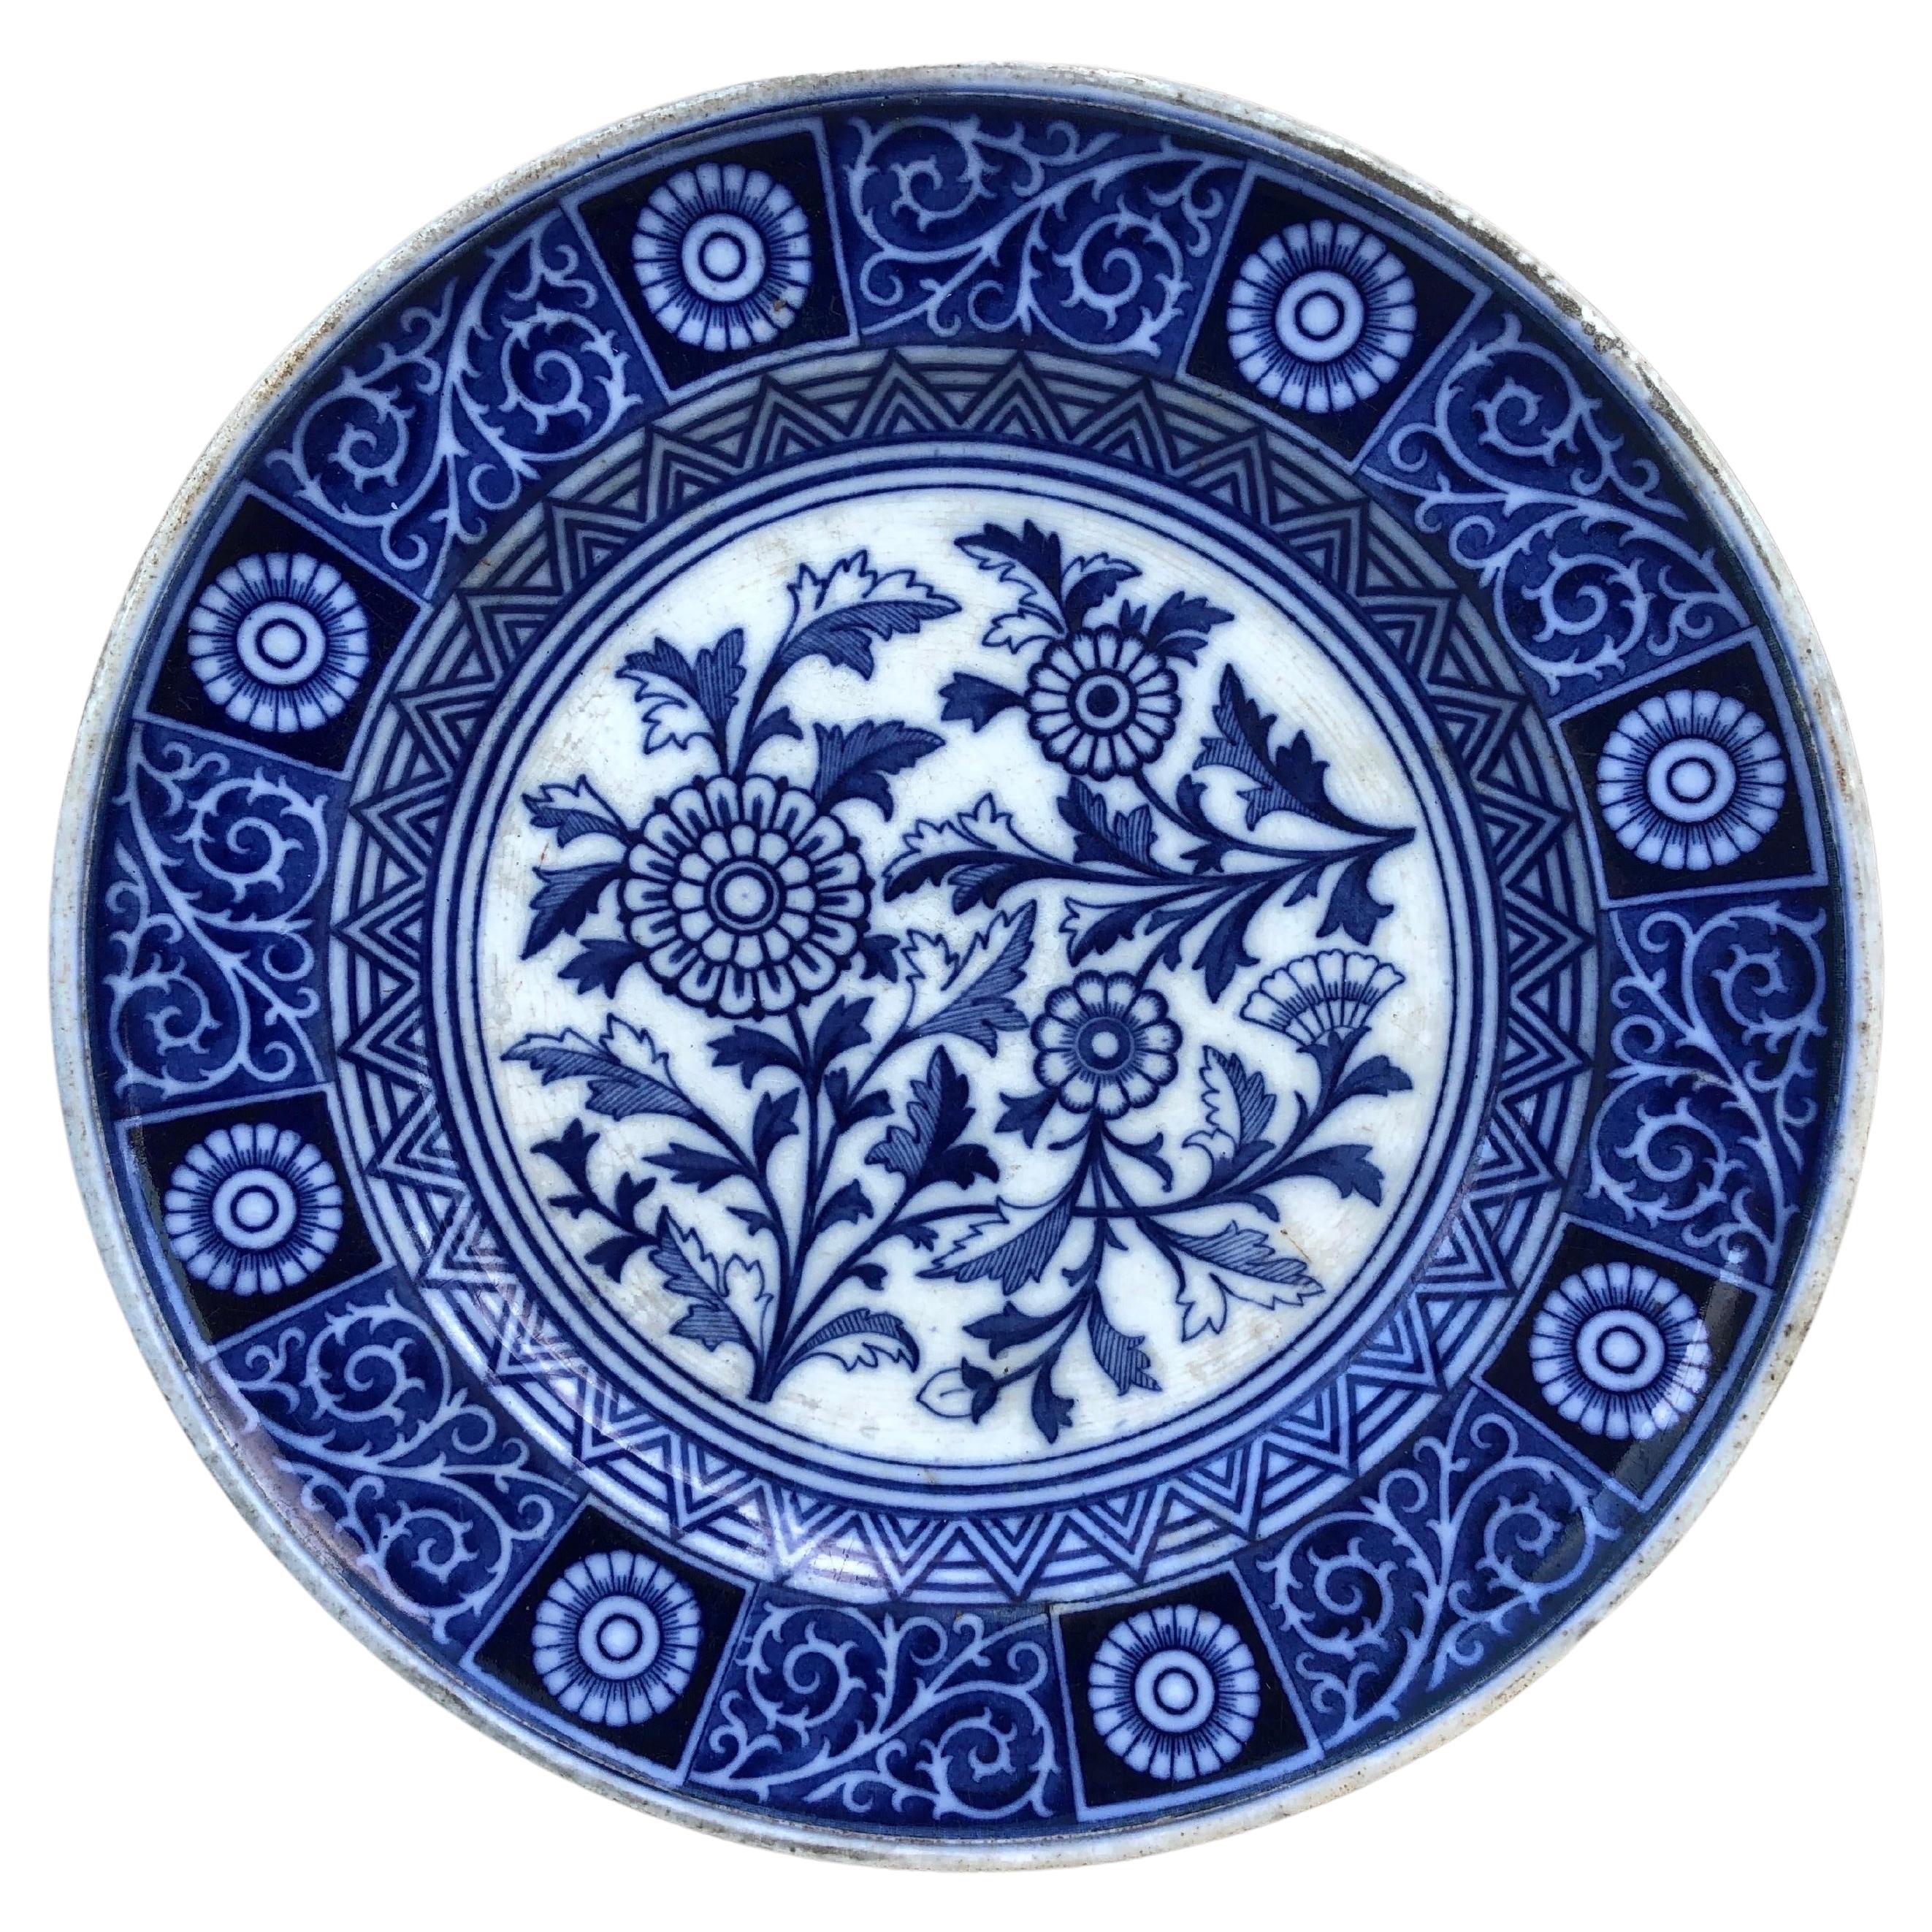 Blau-weiße Gänseblümchenteller Minton aus dem 19. Jahrhundert